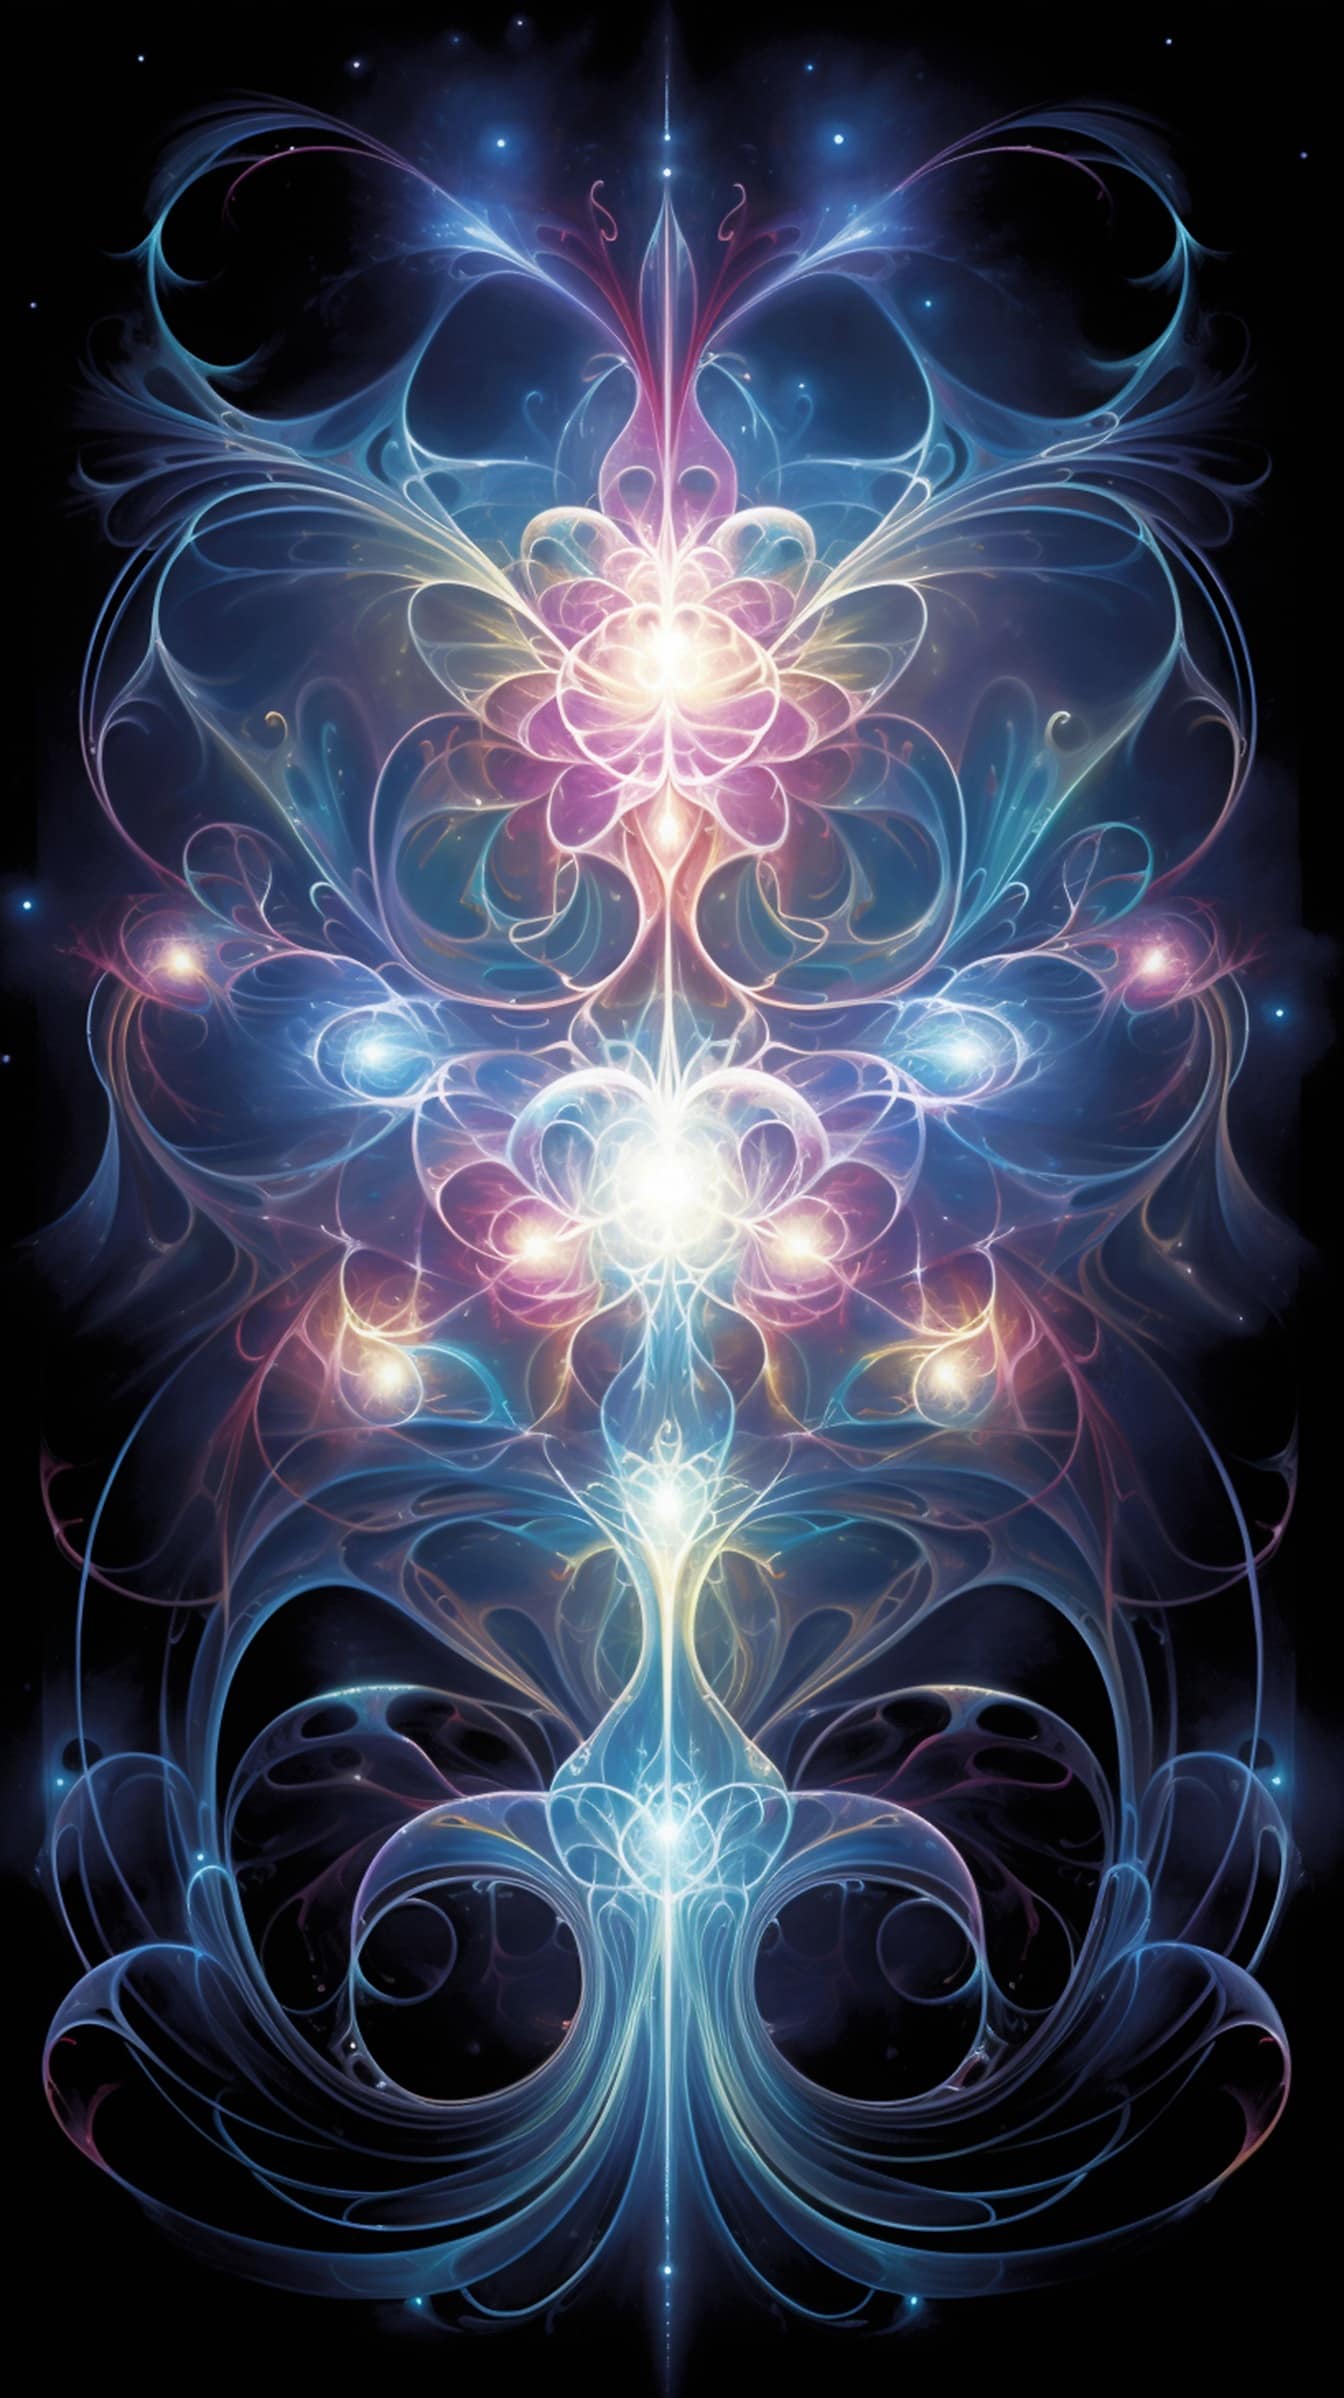 Ilustración de fantasía de la energía de la astrología gráfico abstracto